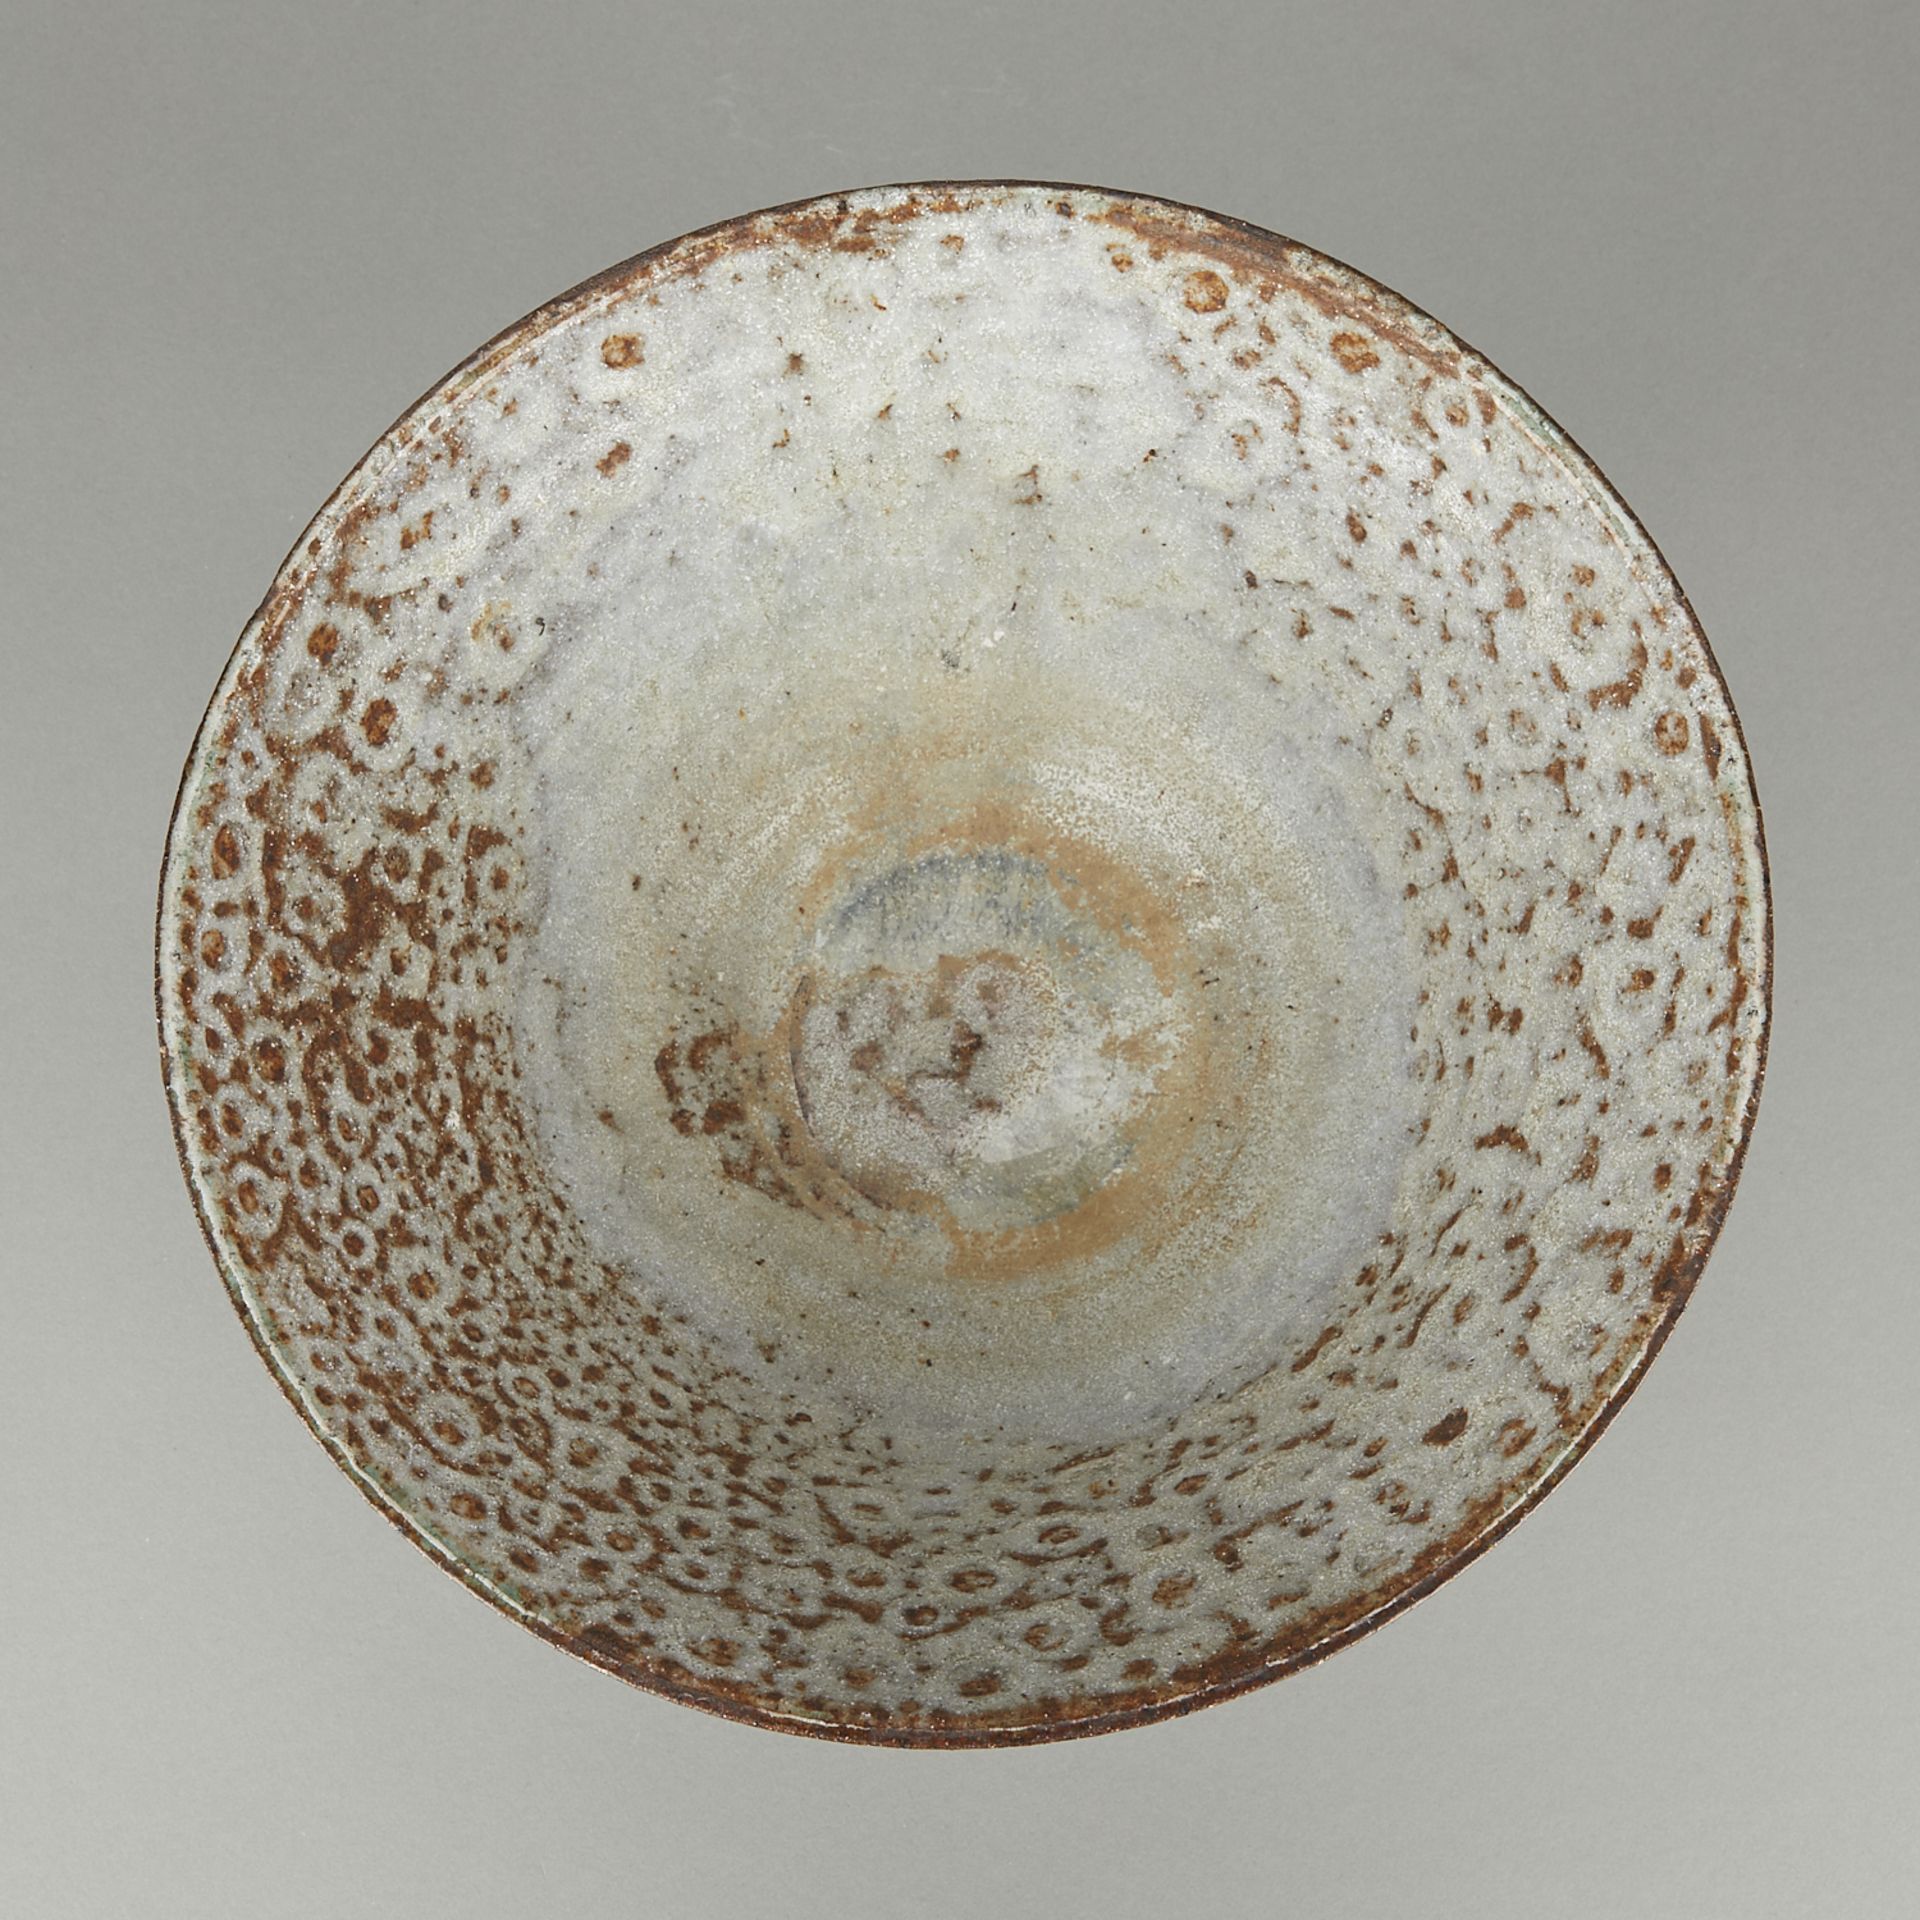 Marguerite Wildenhain Ceramic Bowl - Image 8 of 10